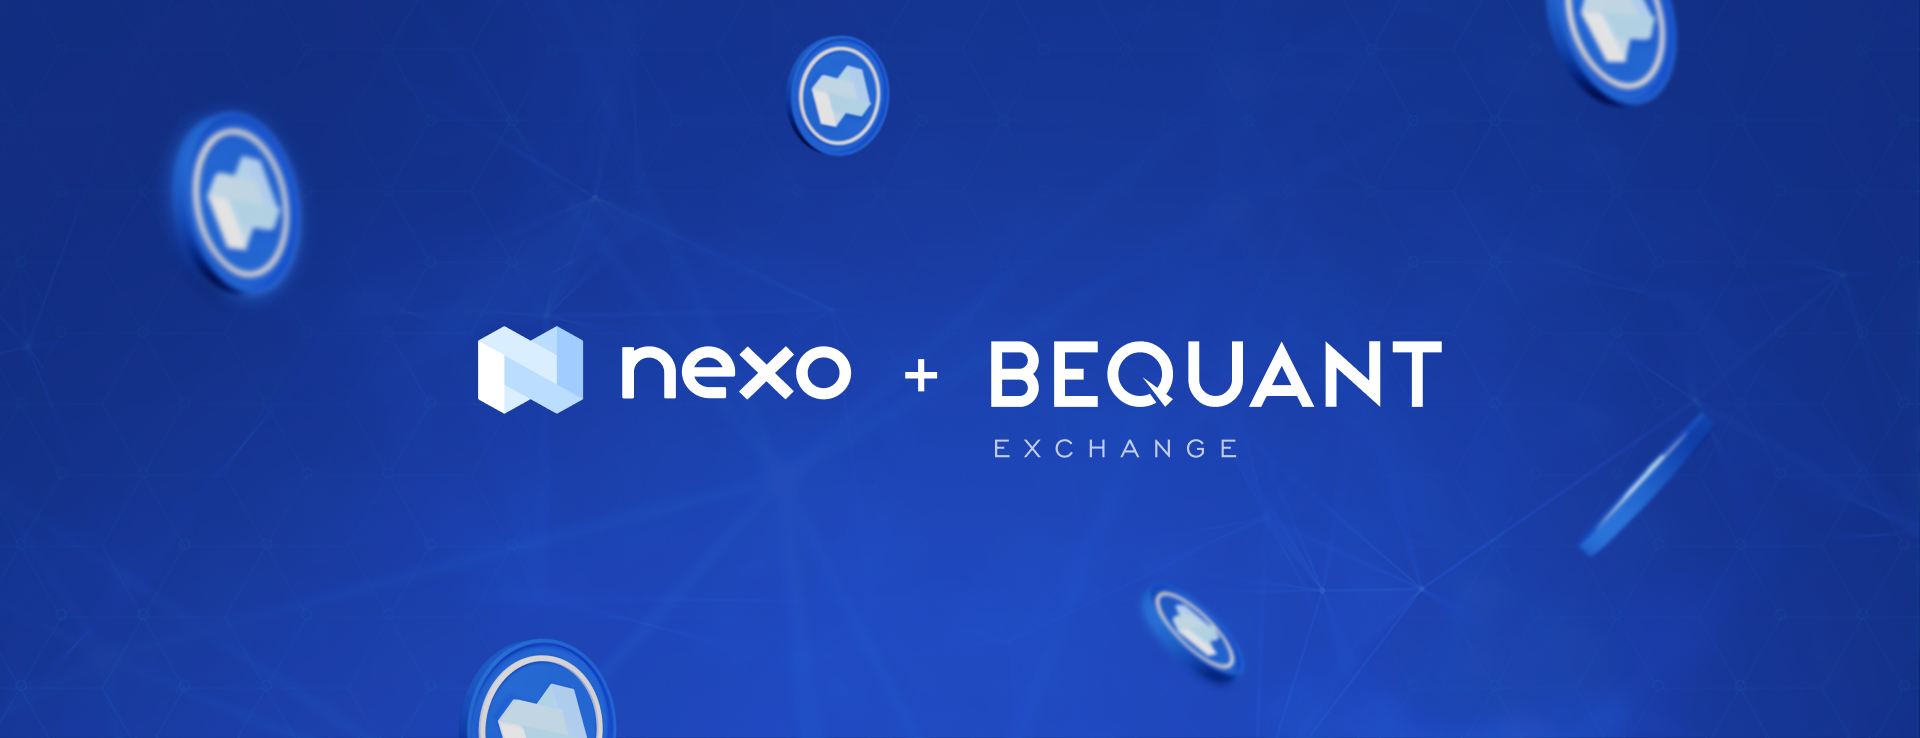 NEXO Token Listed on Digital Assets Trading Platform BEQUANT Exchange